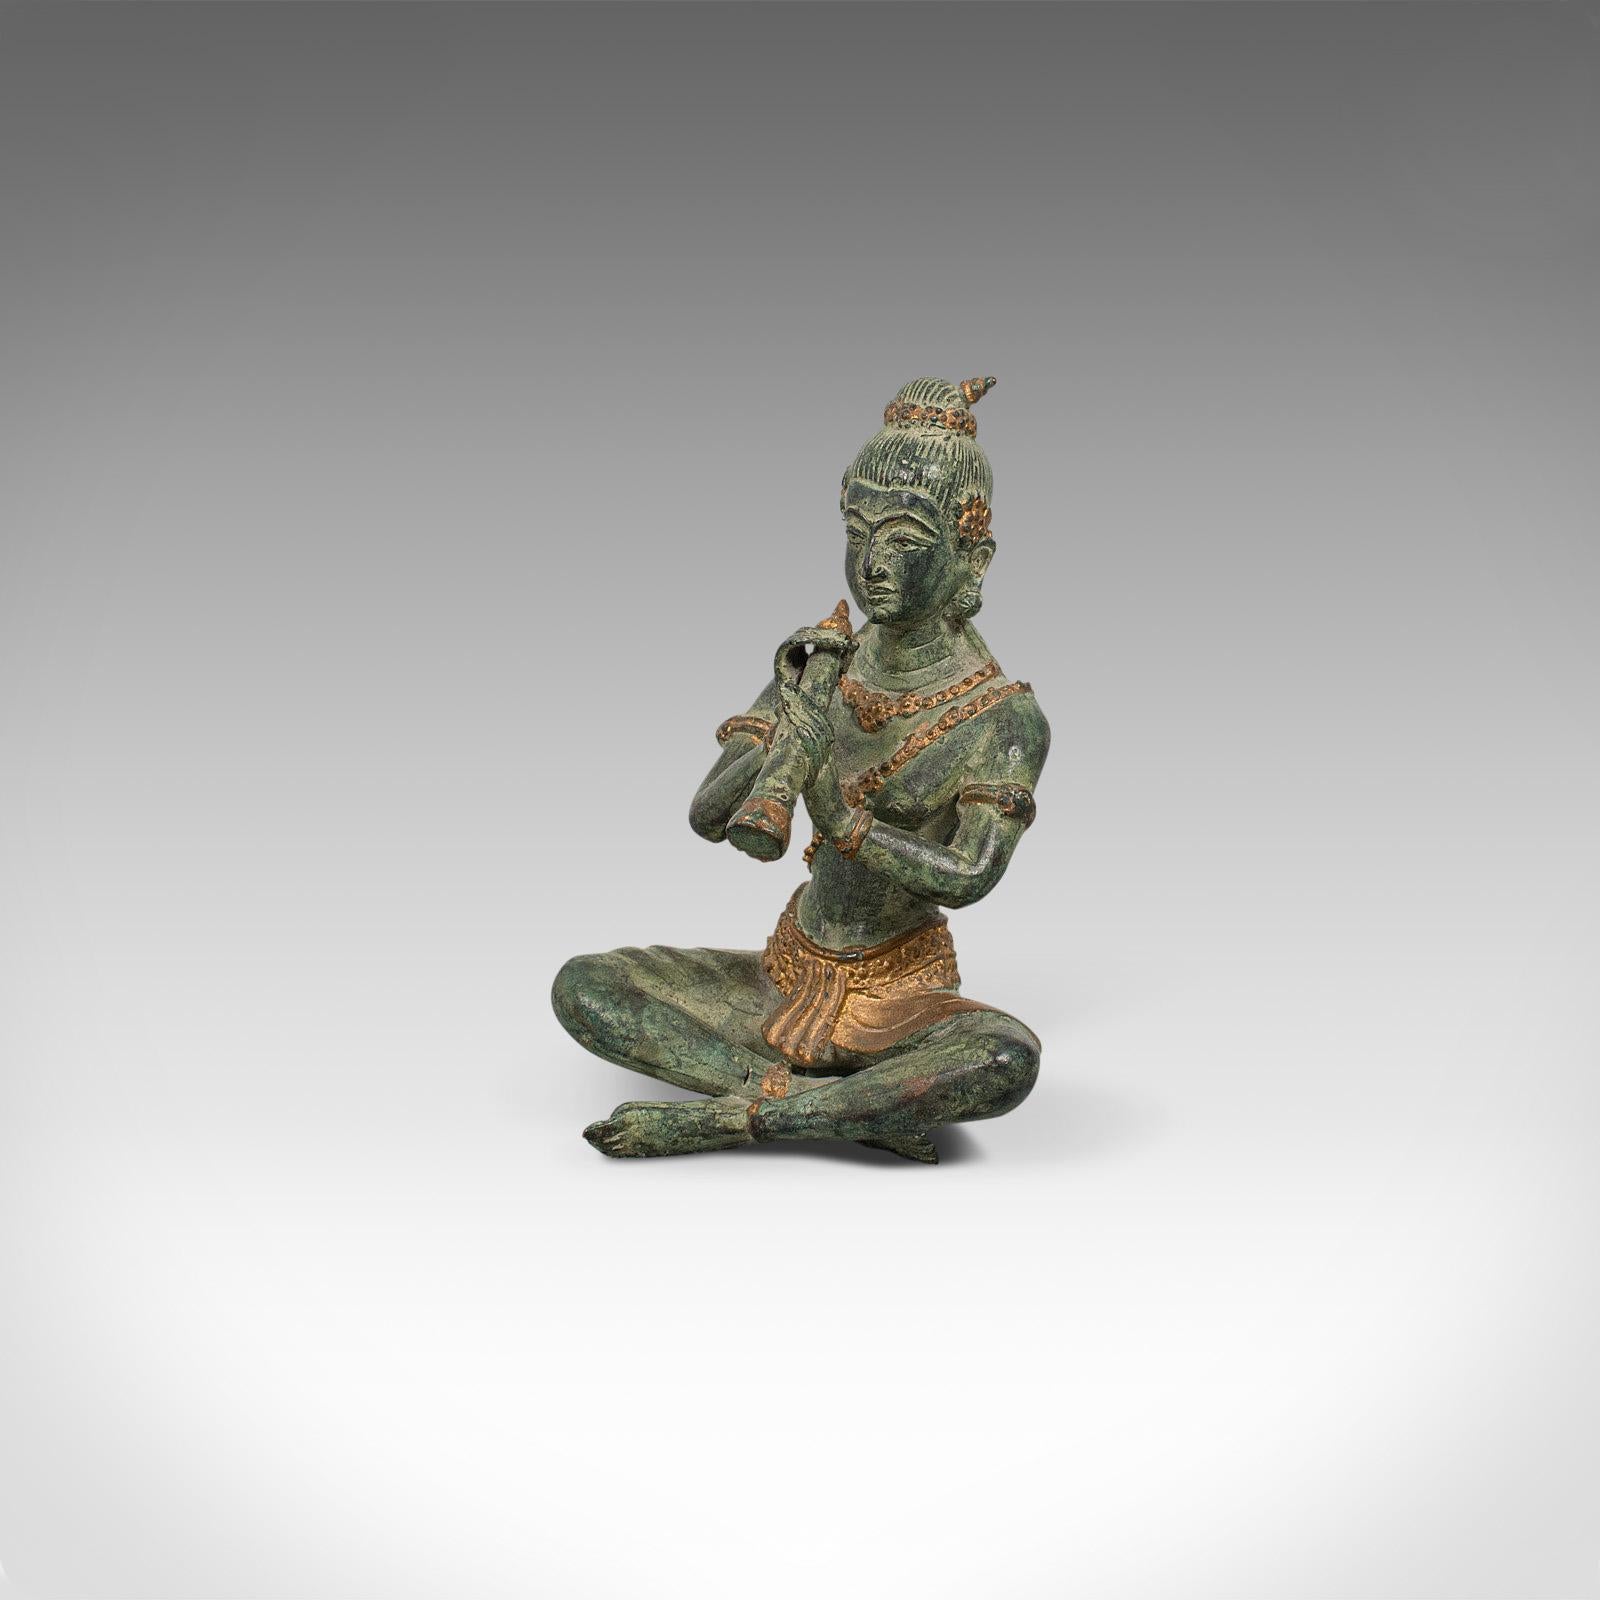 Antique Decorative Figure, Oriental, Bronze, Statue, Study, Musician, circa 1900 In Good Condition For Sale In Hele, Devon, GB